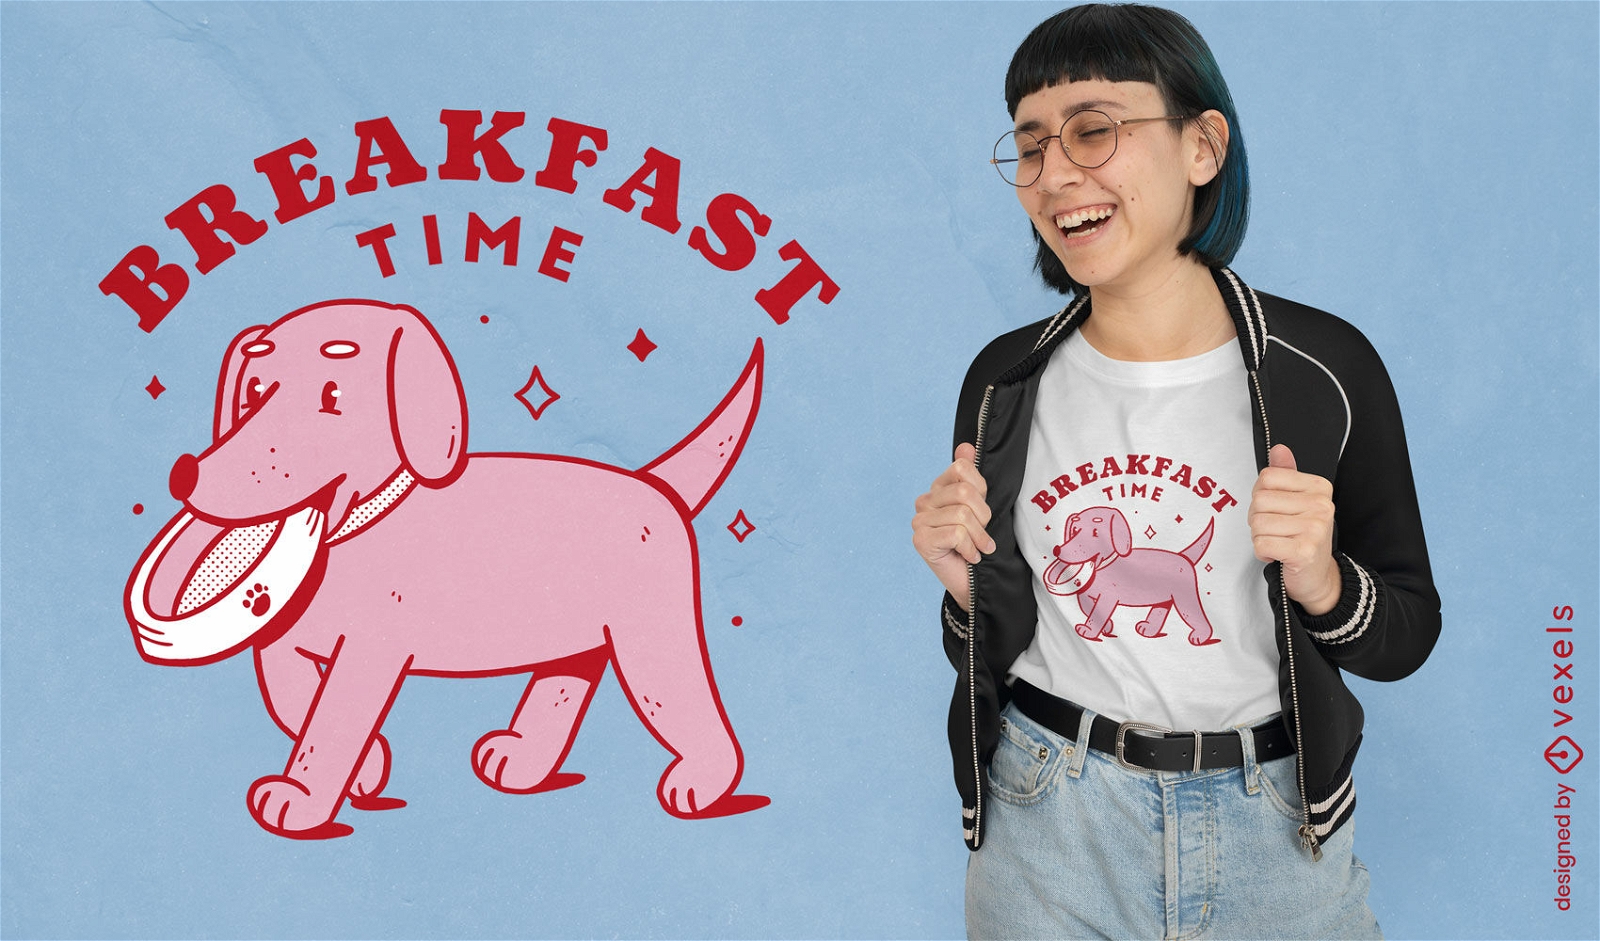 Diseño de camiseta de perro a la hora del desayuno.